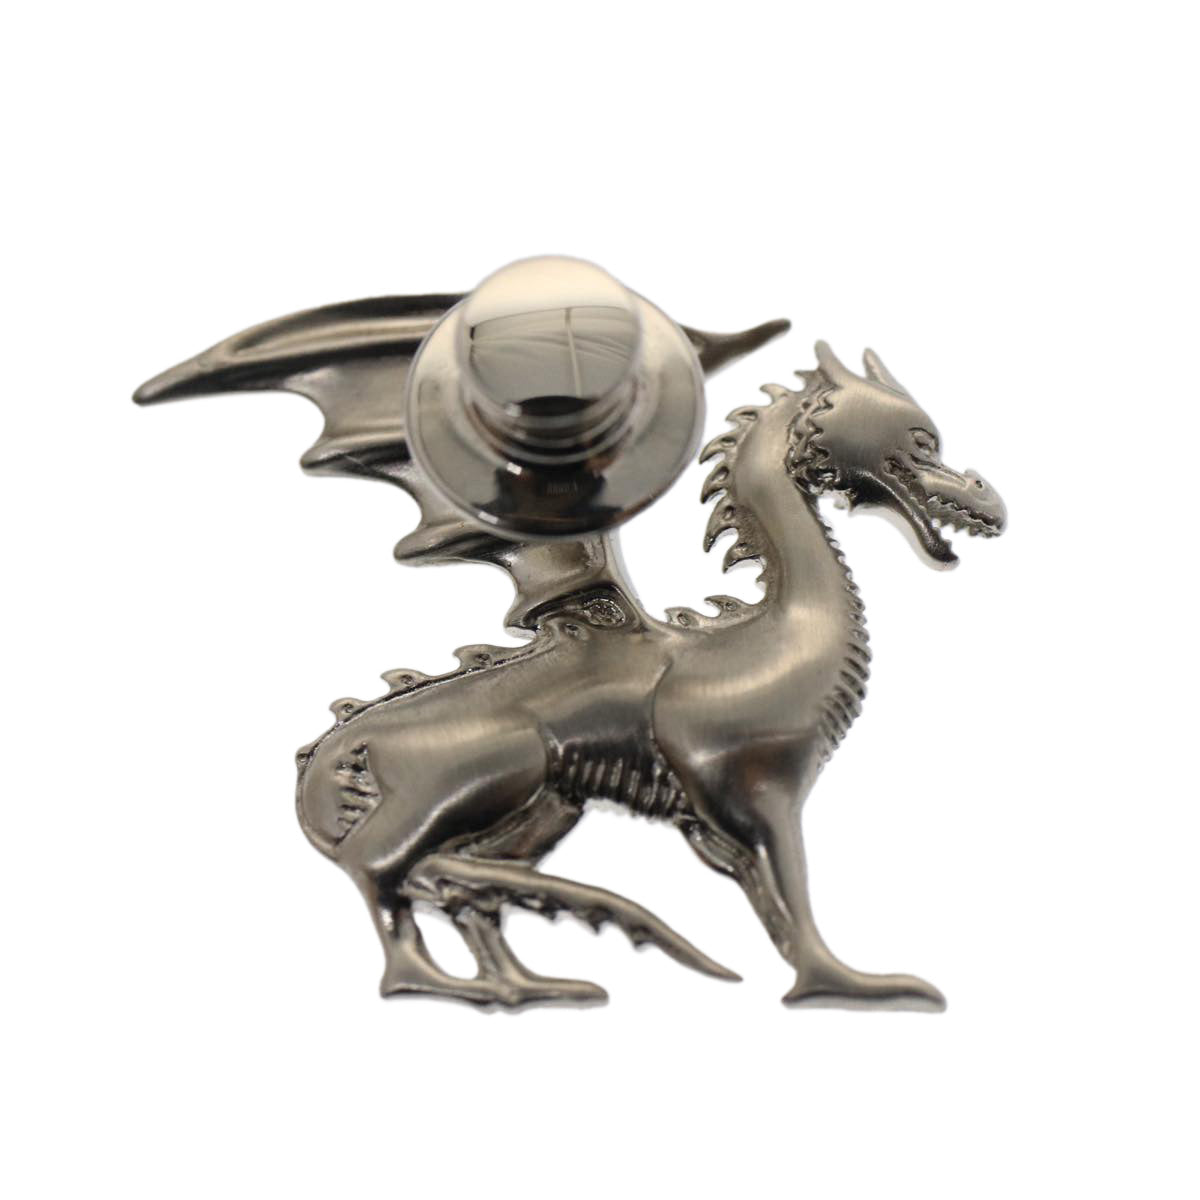 HERMES Dragon Brooch Metal Silver Auth bs7410